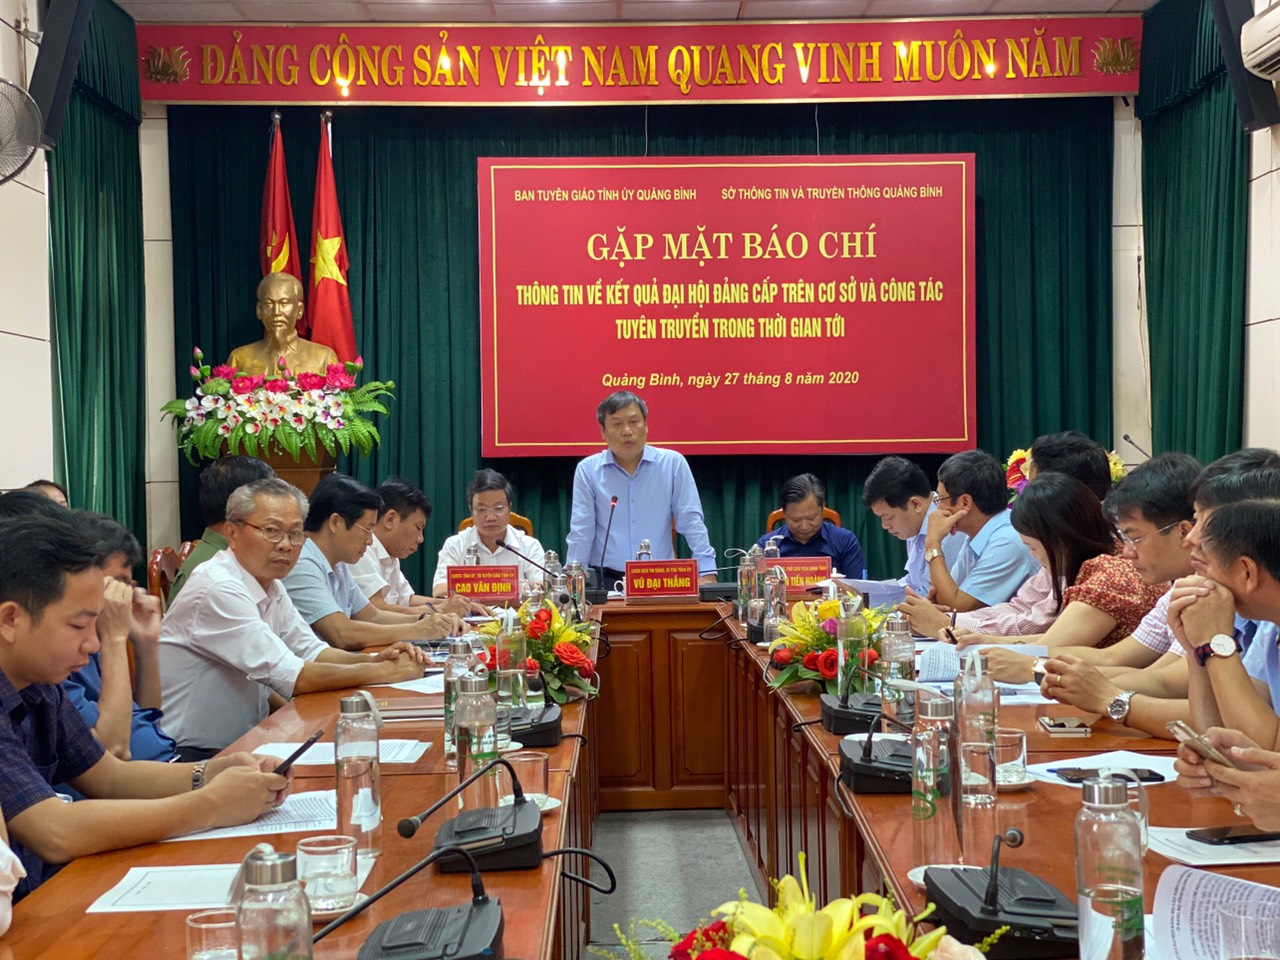 Bí thư Tỉnh ủy tỉnh Quảng Bình Vũ Đại Thắng phát biểu tại cuộc họp.